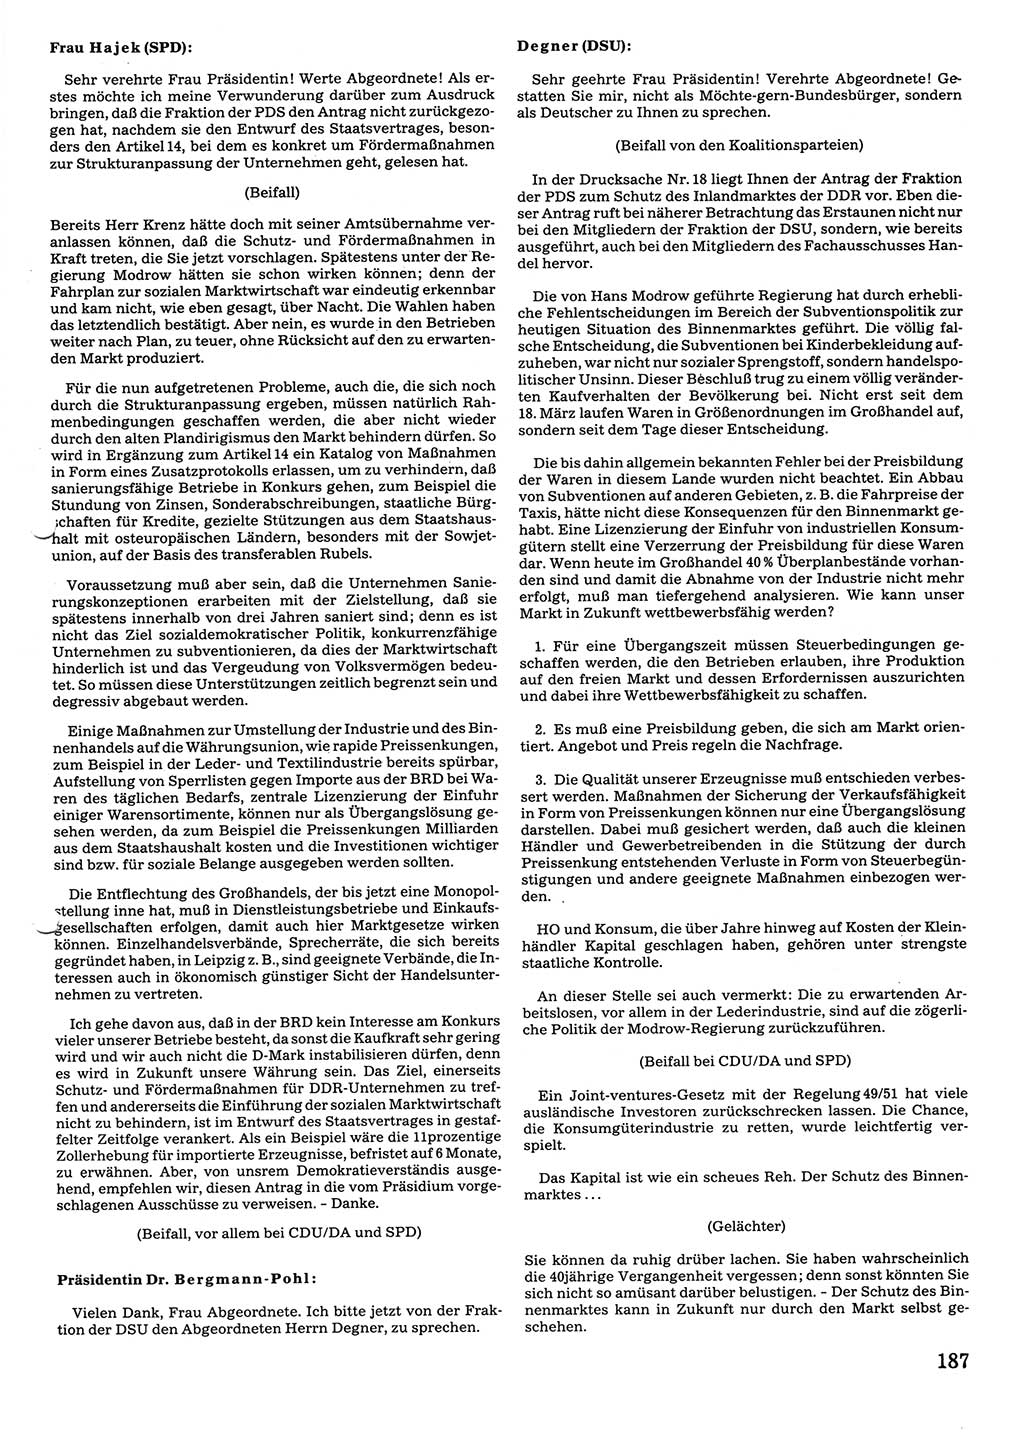 Tagungen der Volkskammer (VK) der Deutschen Demokratischen Republik (DDR), 10. Wahlperiode 1990, Seite 187 (VK. DDR 10. WP. 1990, Prot. Tg. 1-38, 5.4.-2.10.1990, S. 187)